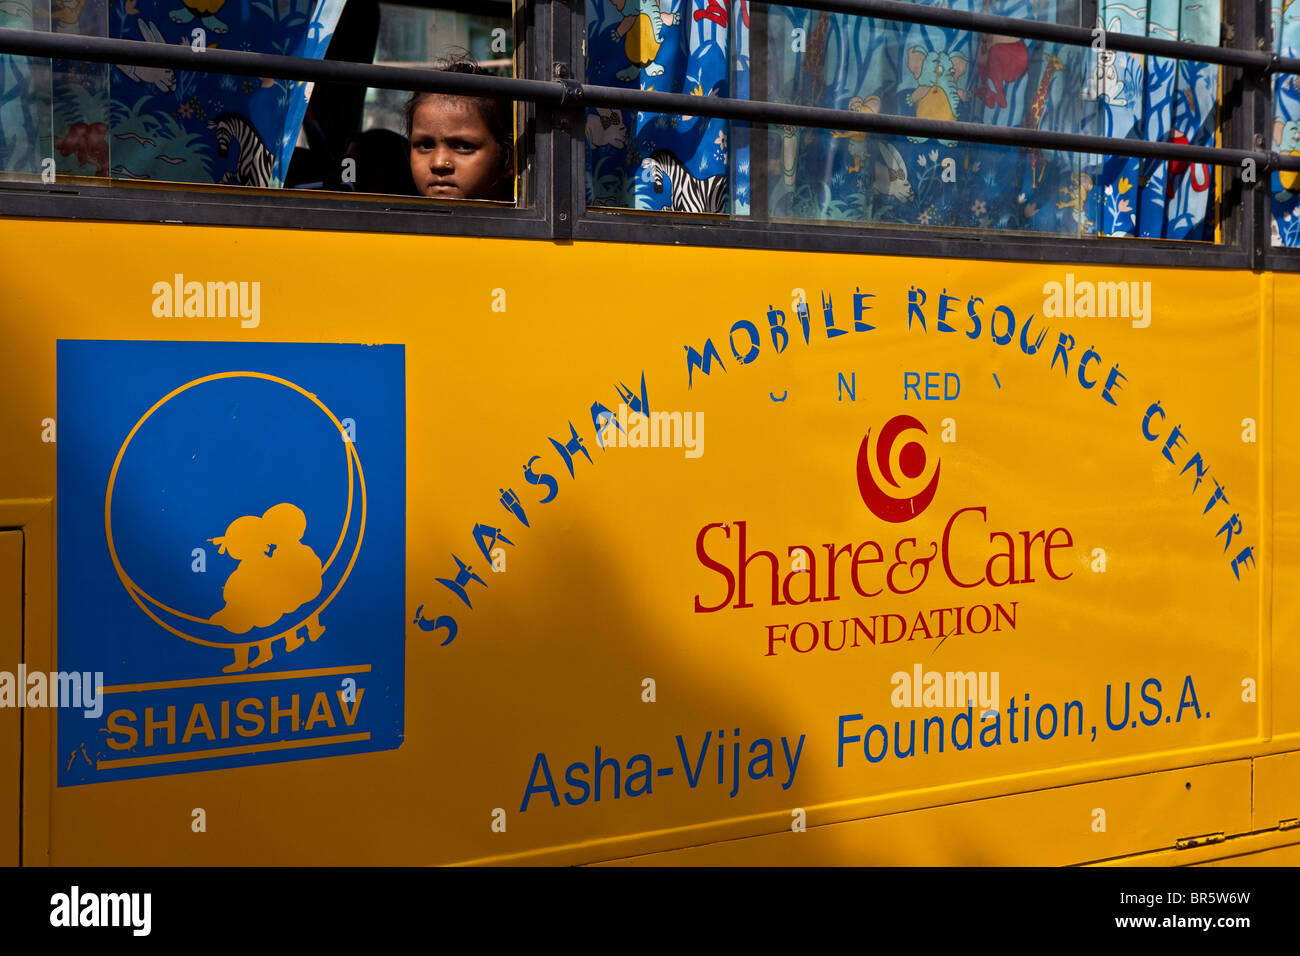 Un enfant regarde par la fenêtre de l'un des centre de ressources Mobile est géré par l'Shaishav la confiance. Bhavnagara, Inde. Banque D'Images